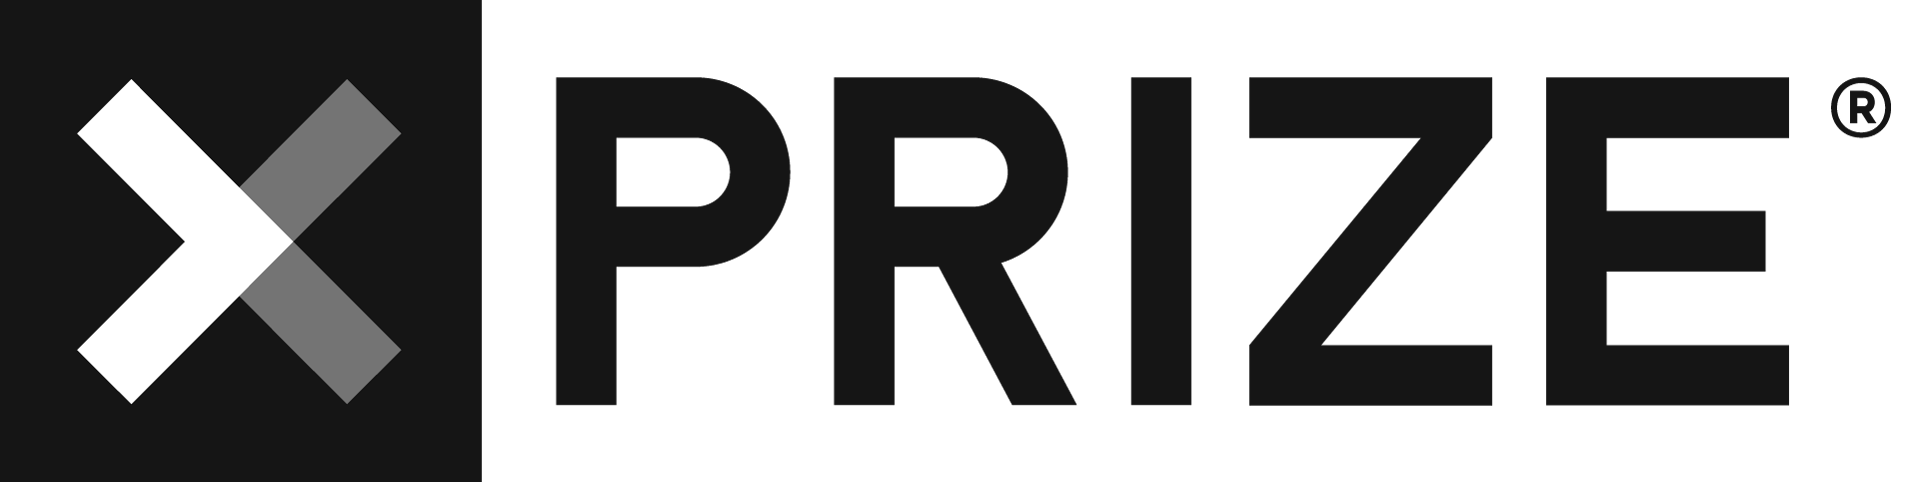 XPRIZE_Logo.png